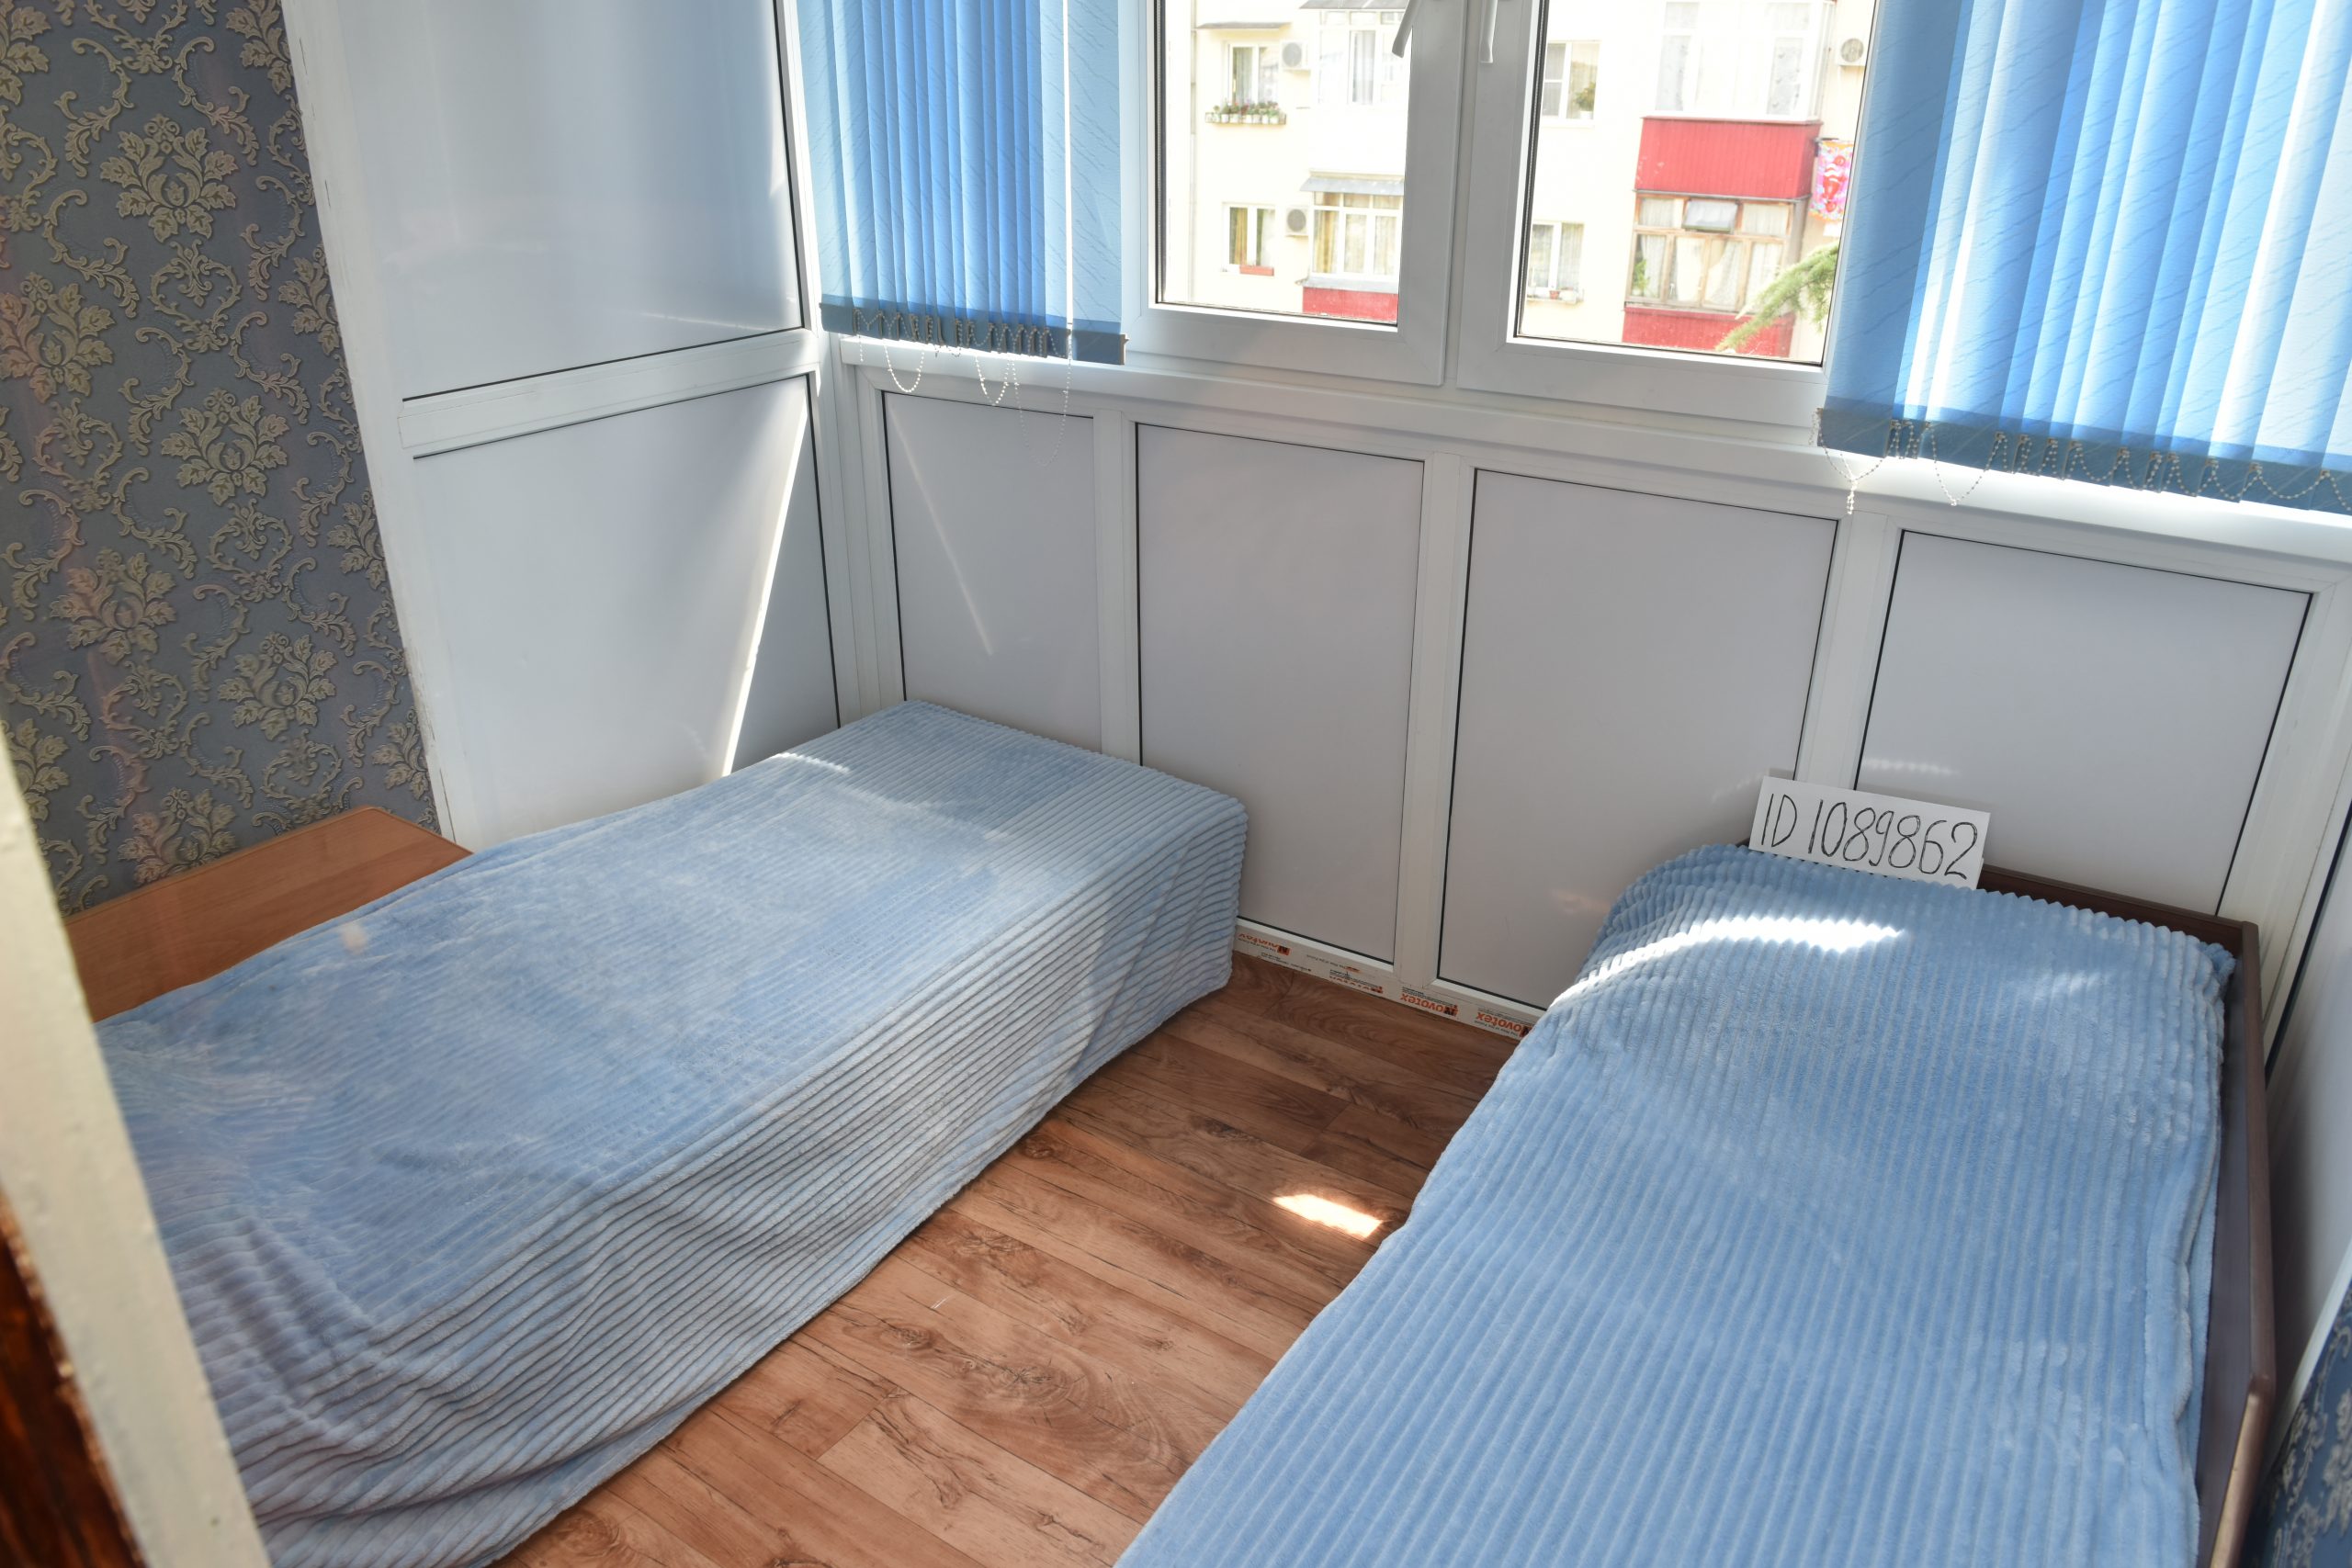 Квартира на Лазарева 56 (33кв.м) до 4 гостей